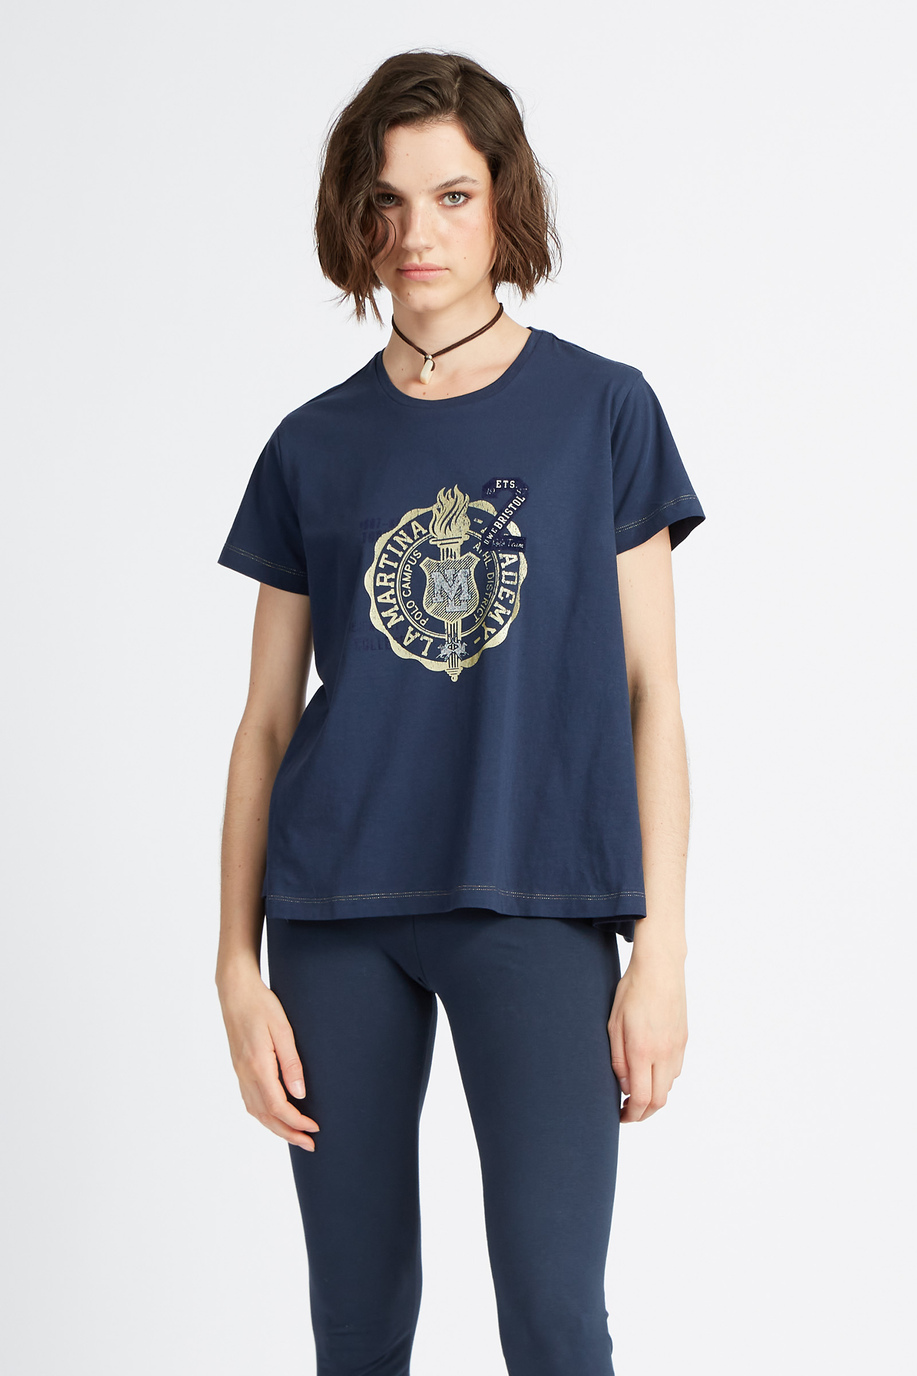 Damen-T-Shirt mit kurzen Ärmeln Maxi-Logo-Kapsel Polo Academy - Verdad - Easy wear Frauen | La Martina - Official Online Shop